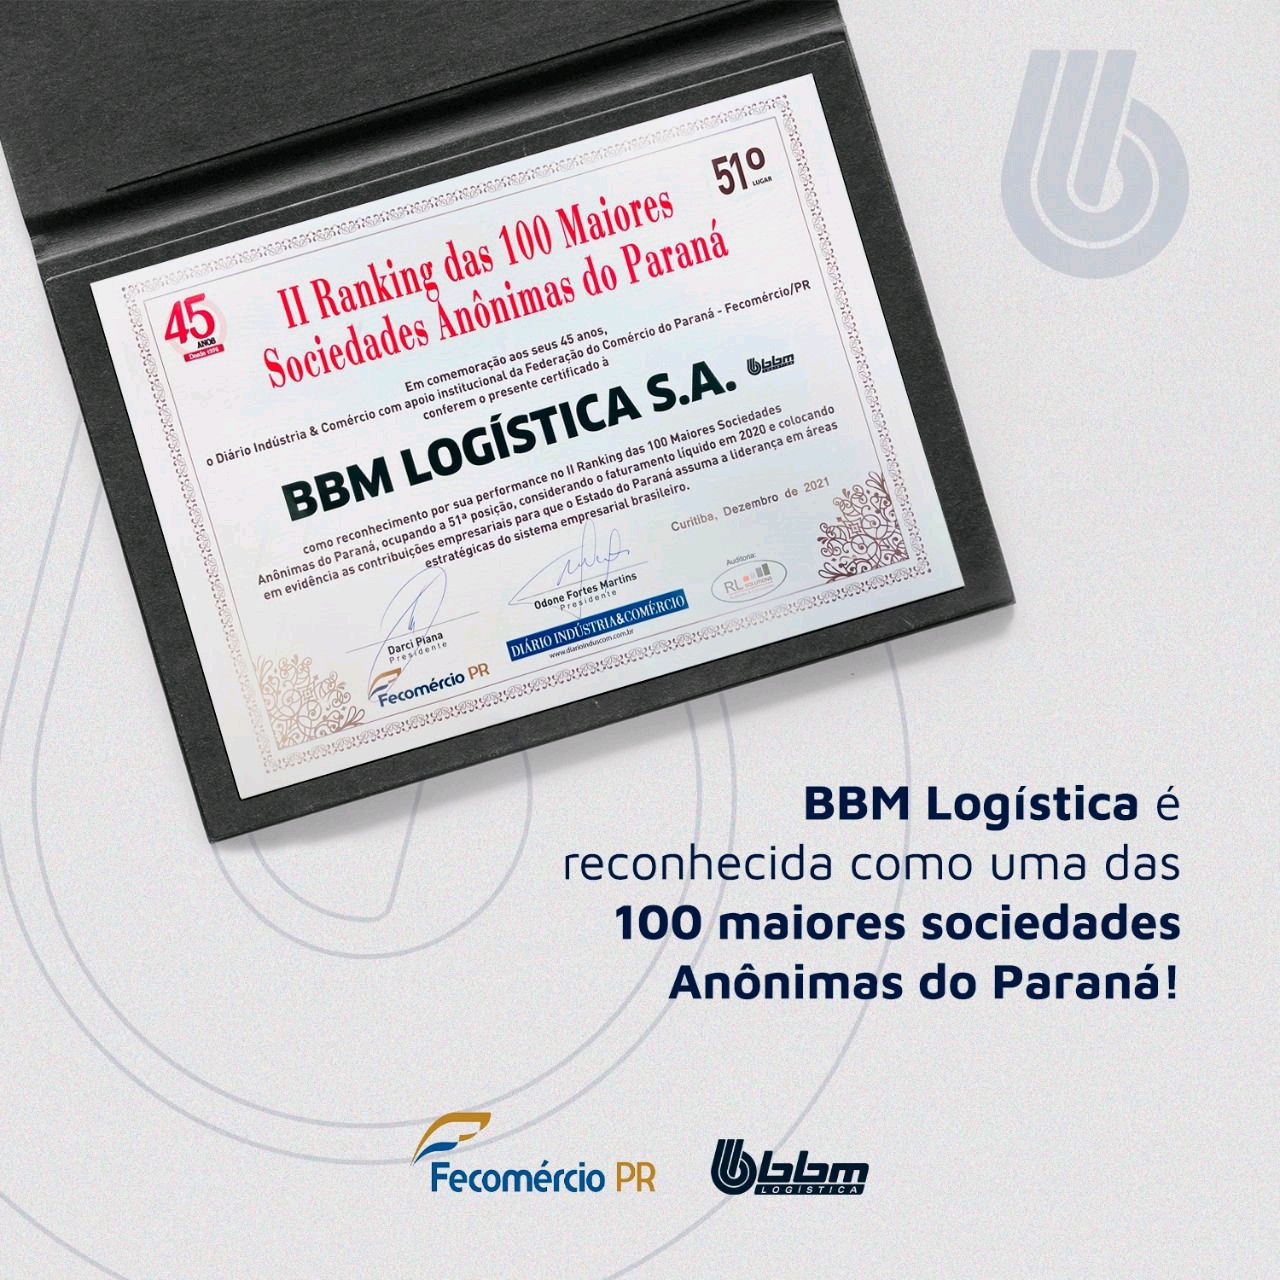  BBM recebe certificado no Paraná